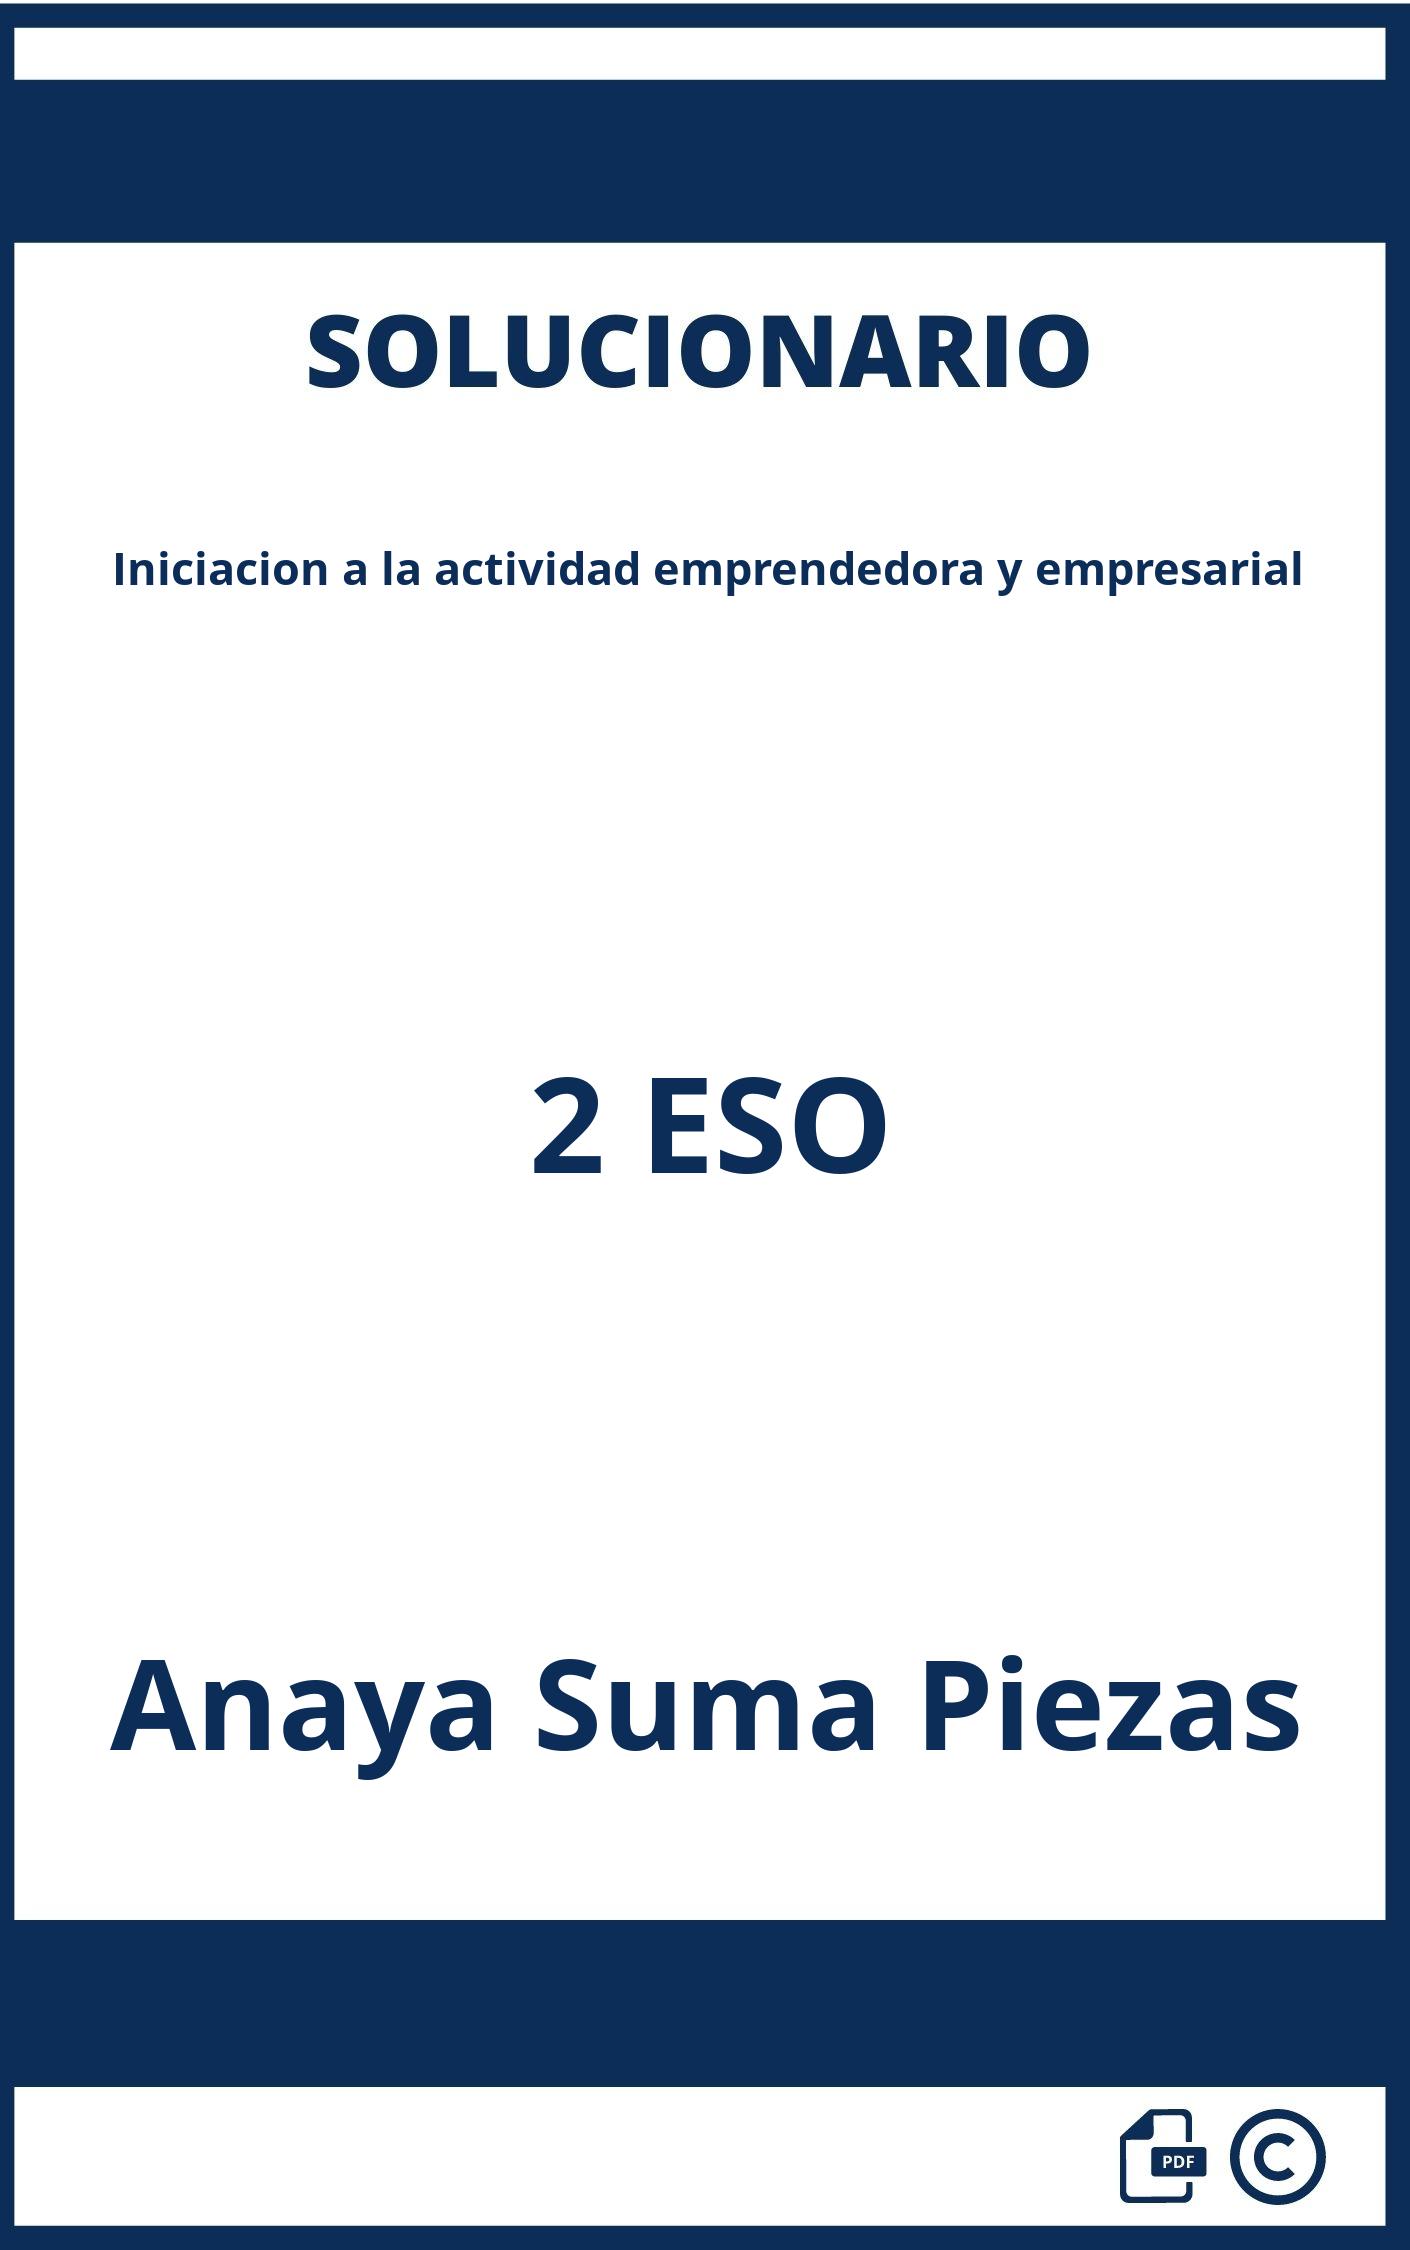 Solucionario Iniciacion a la actividad emprendedora y empresarial 2 ESO Anaya Suma Piezas